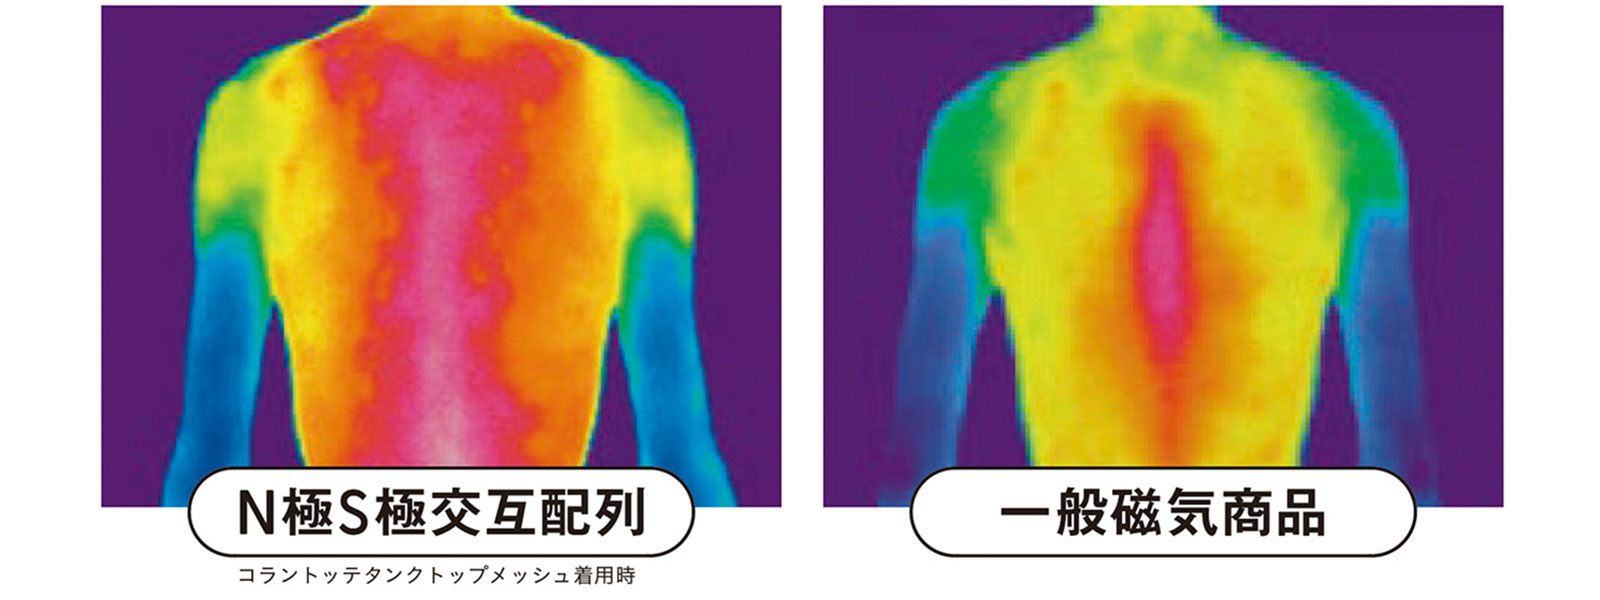 サーモグラフィを使ったN極S極交互配列商品の着用時と同極配列商品の着用時の体温上昇範囲の比較